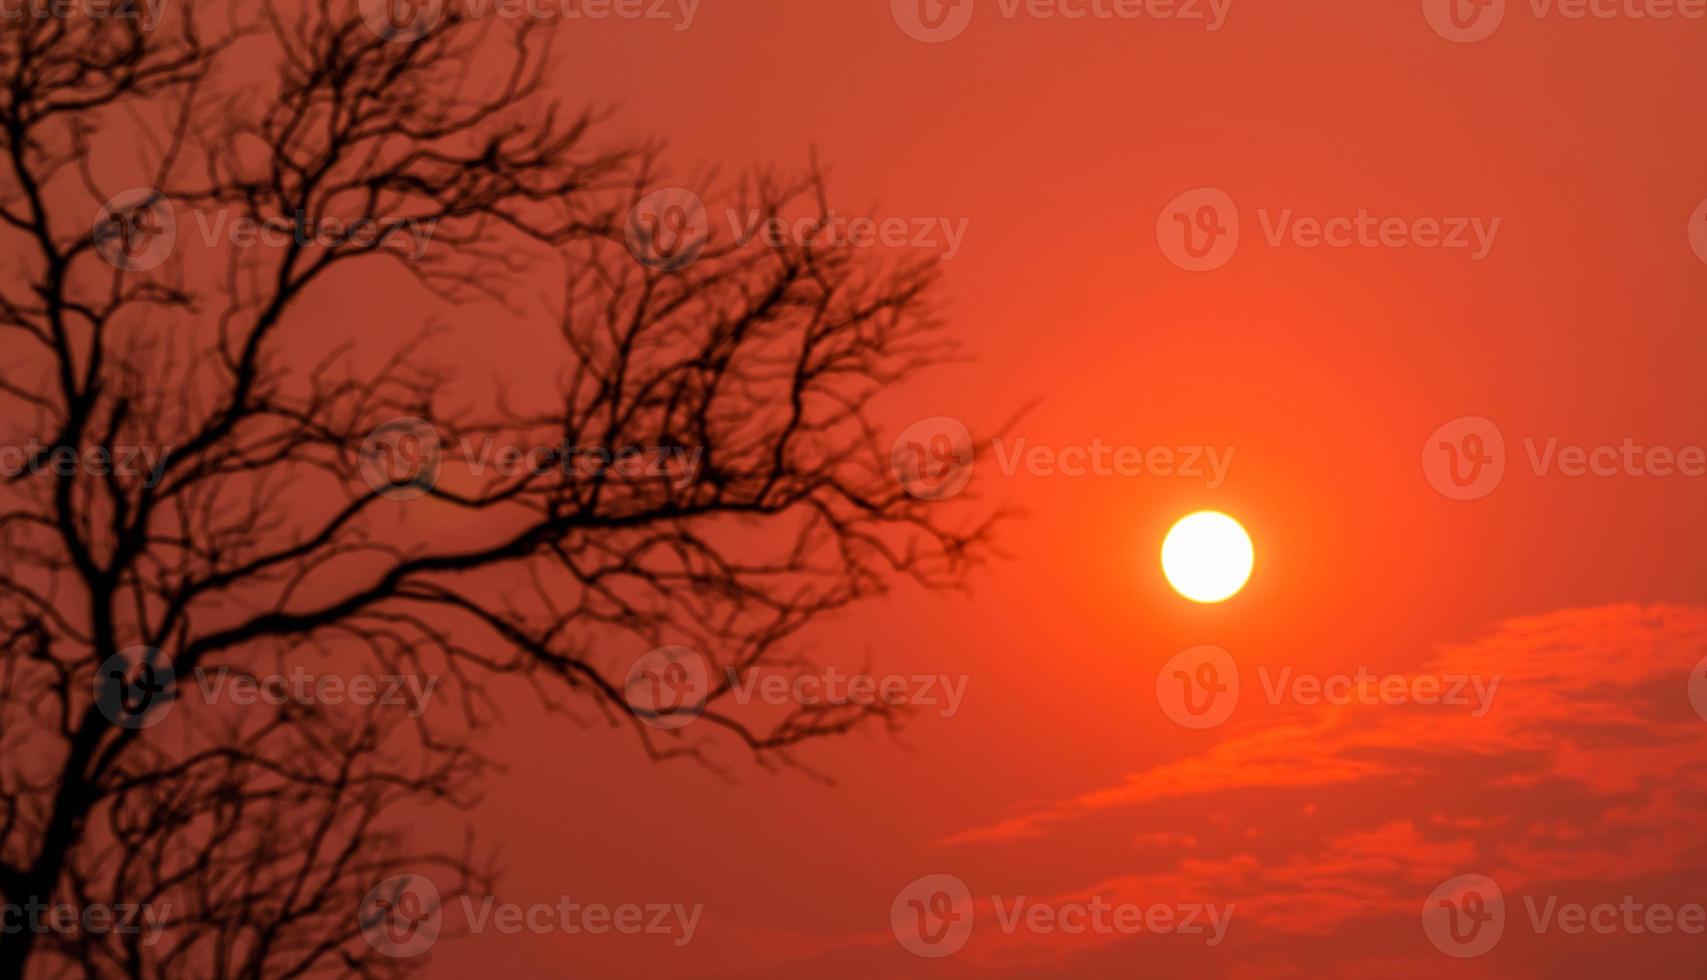 ronde kleine zon op rode avondrood met onscherpe voorgrond silhouet bladloze boom. vreedzame, rustige en dood abstracte achtergrond. mooi takkenpatroon. natuur landschap. zomer hemel in de schemering. foto